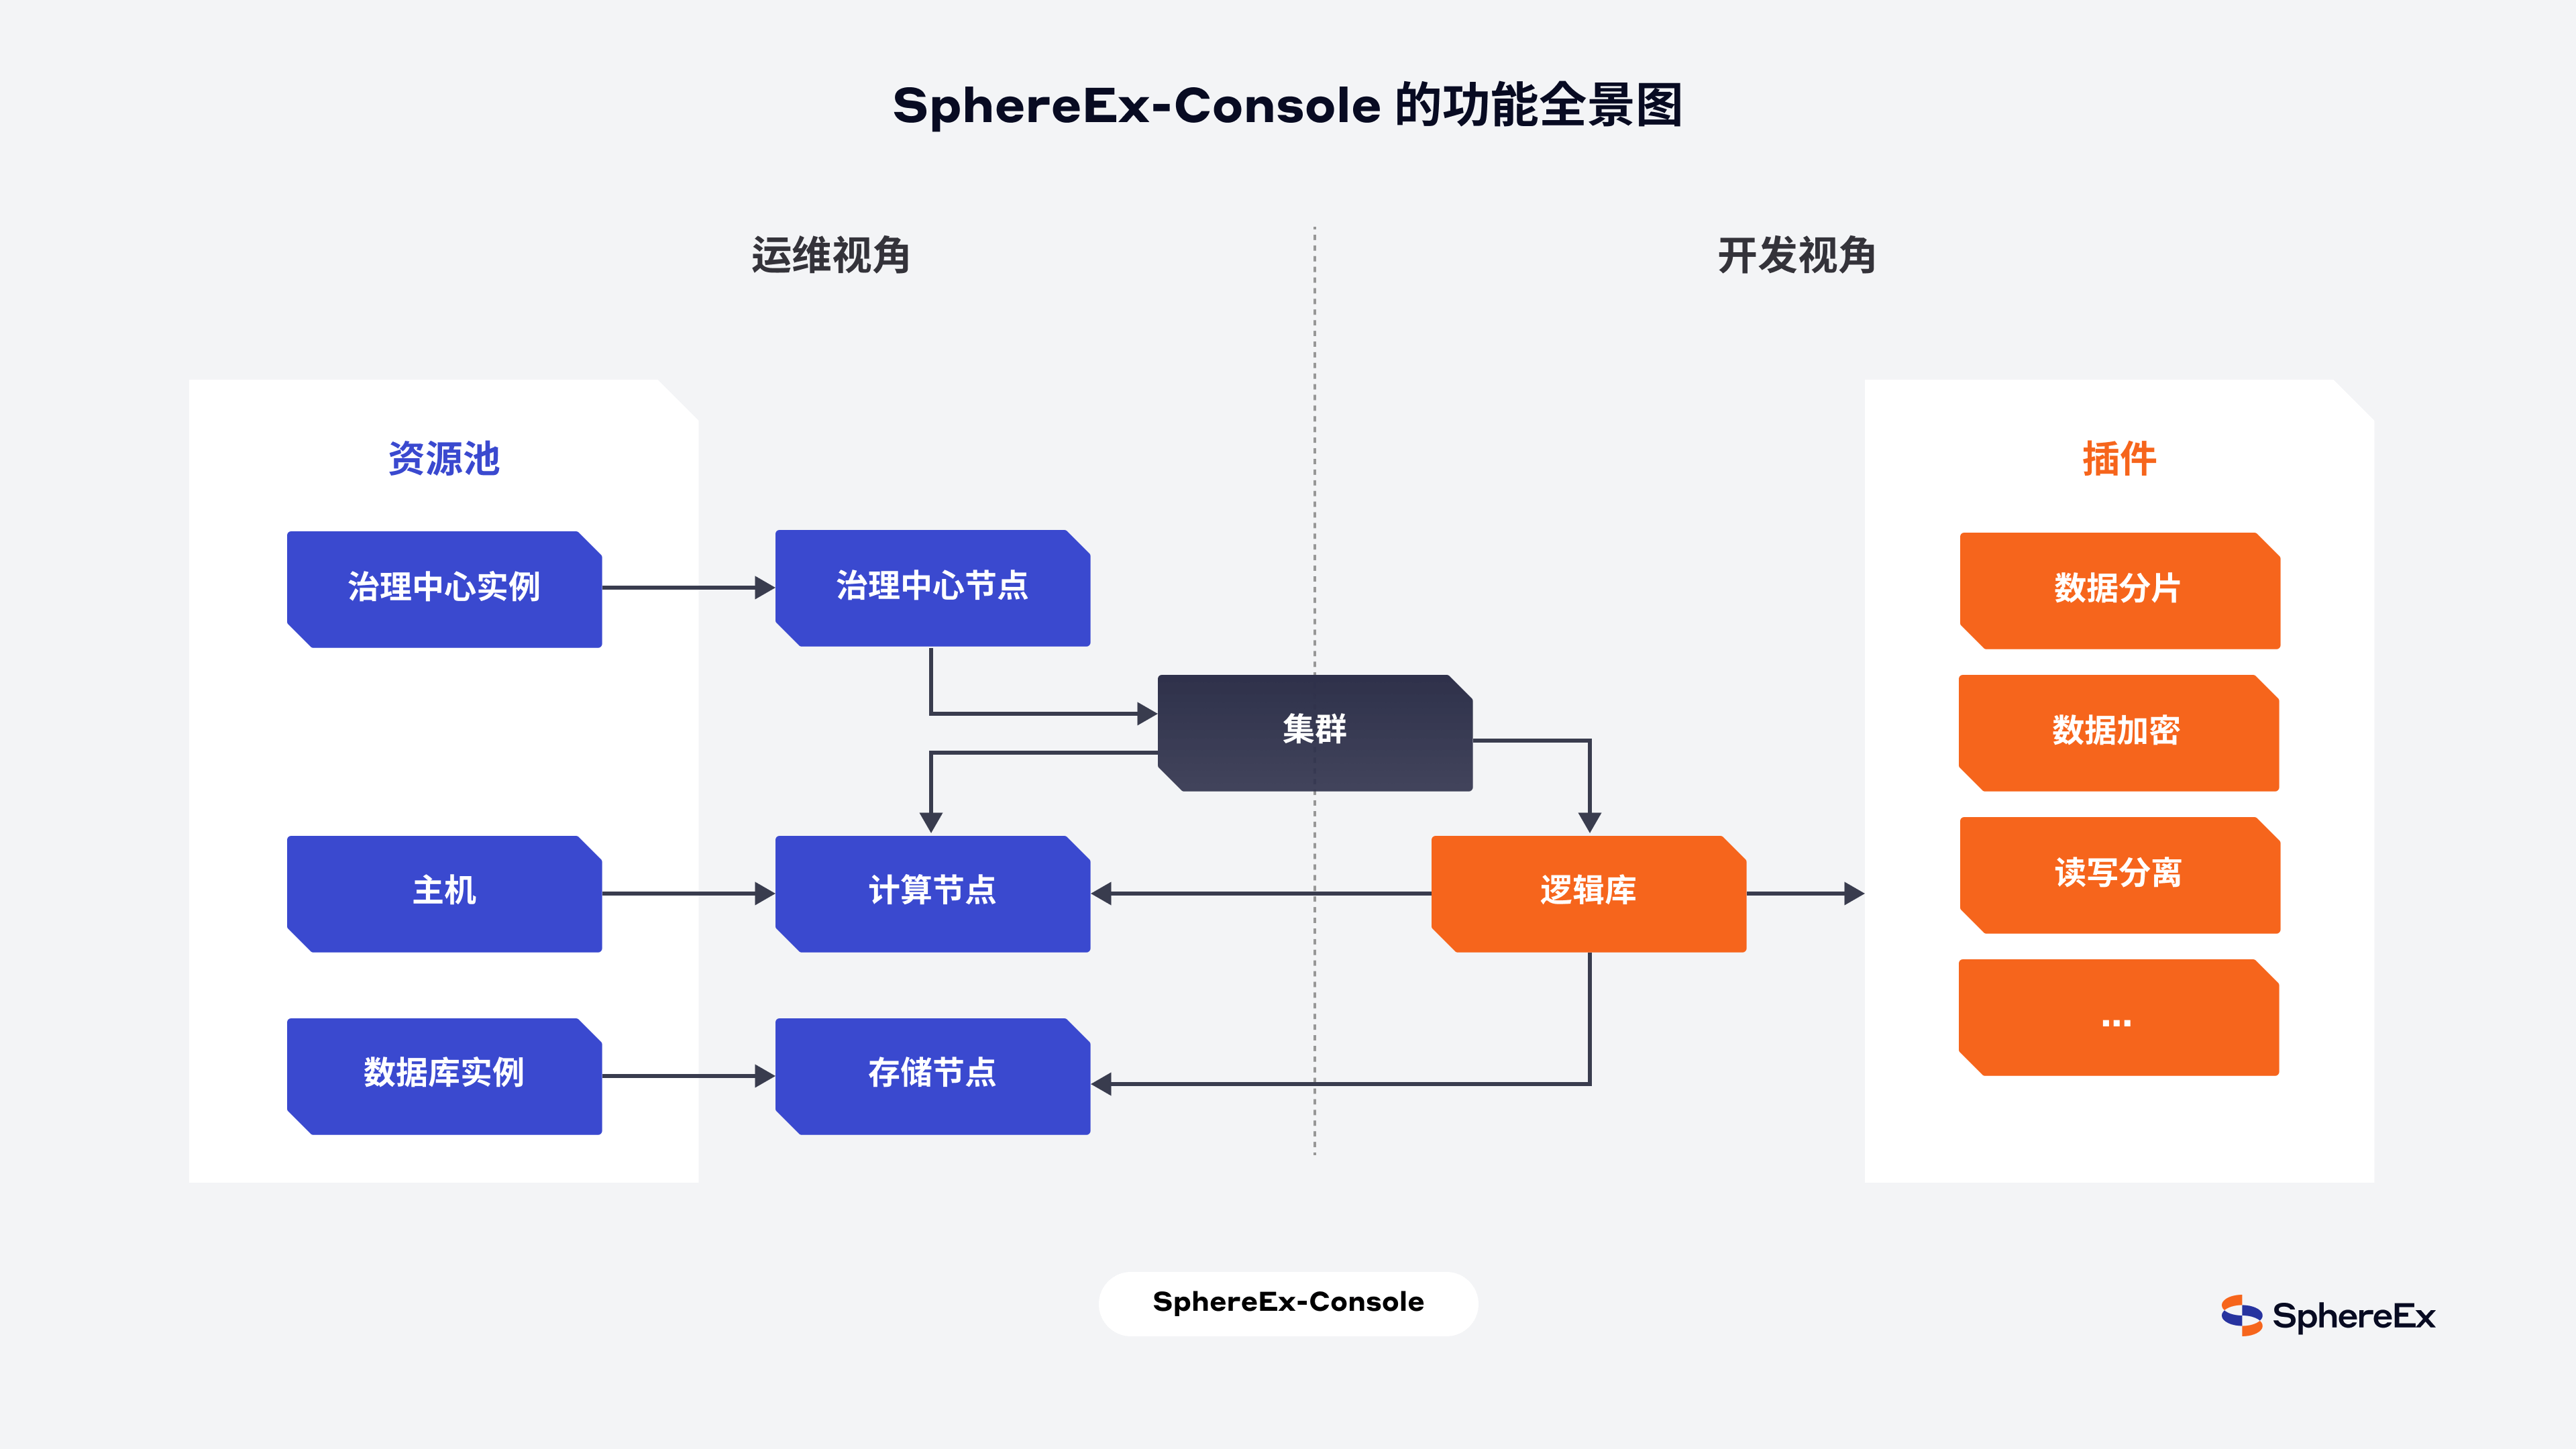 SphereEx-Console 的功能全景图